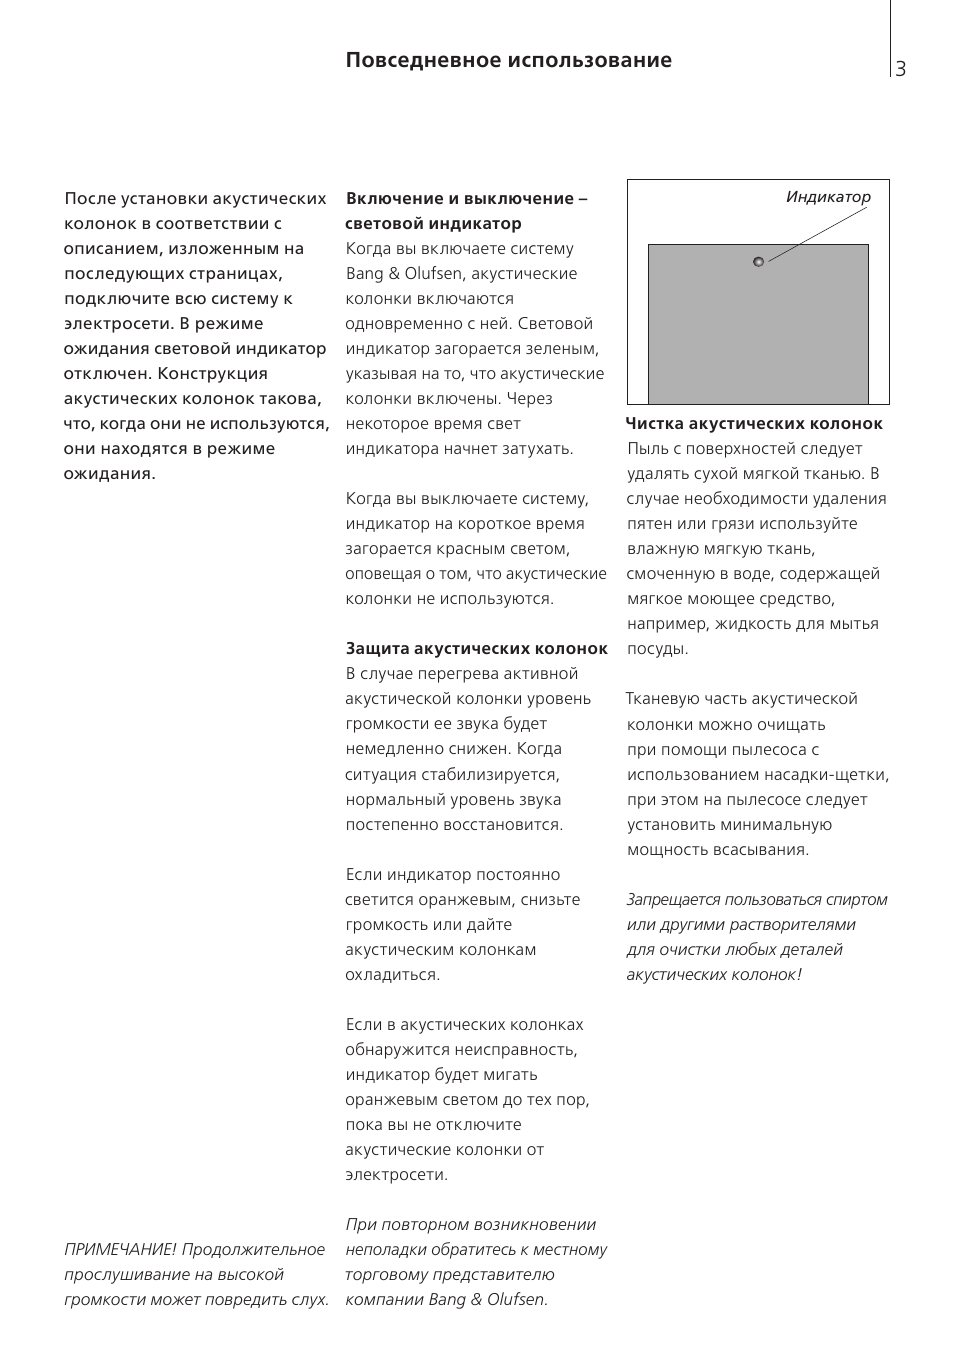 Повседневное использование | Инструкция по эксплуатации Bang & Olufsen BeoLab 12-1 - User Guide | Страница 3 / 8